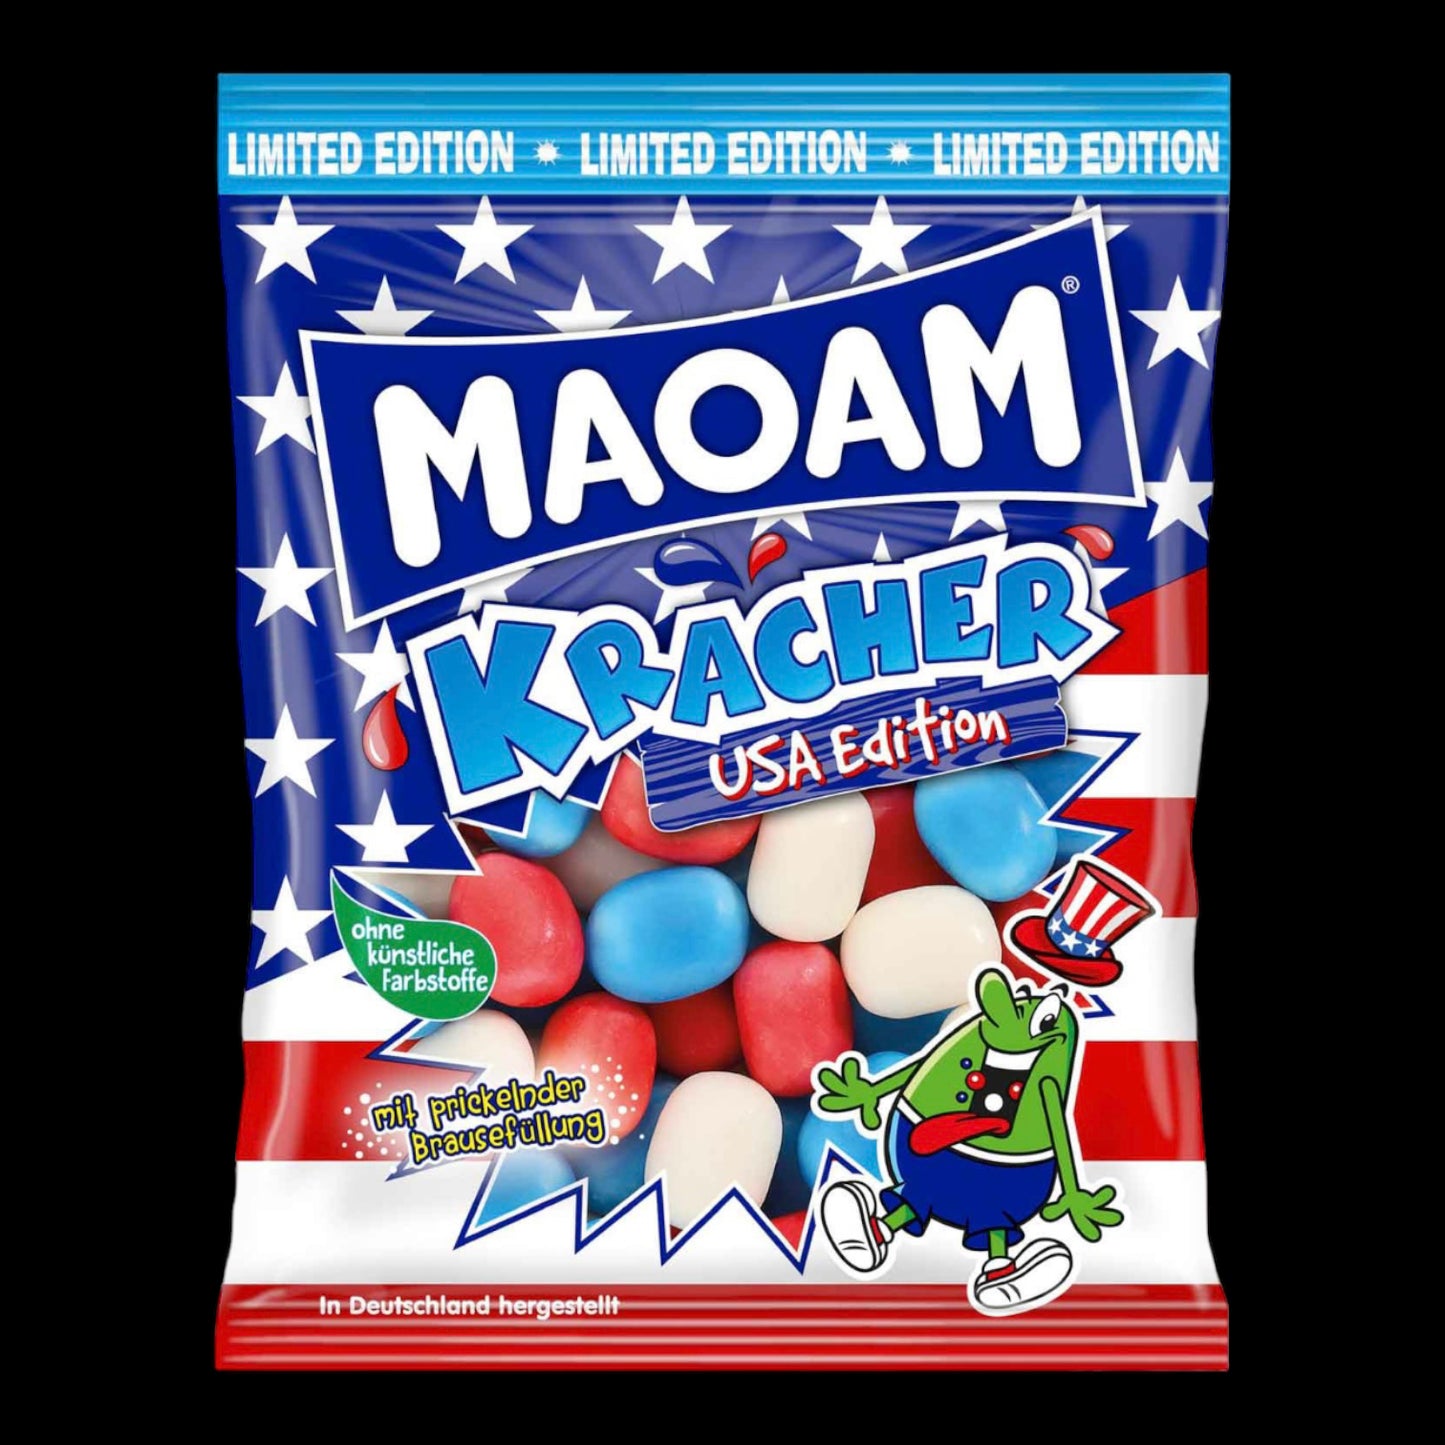 Maoam Kracher USA Edition 200g